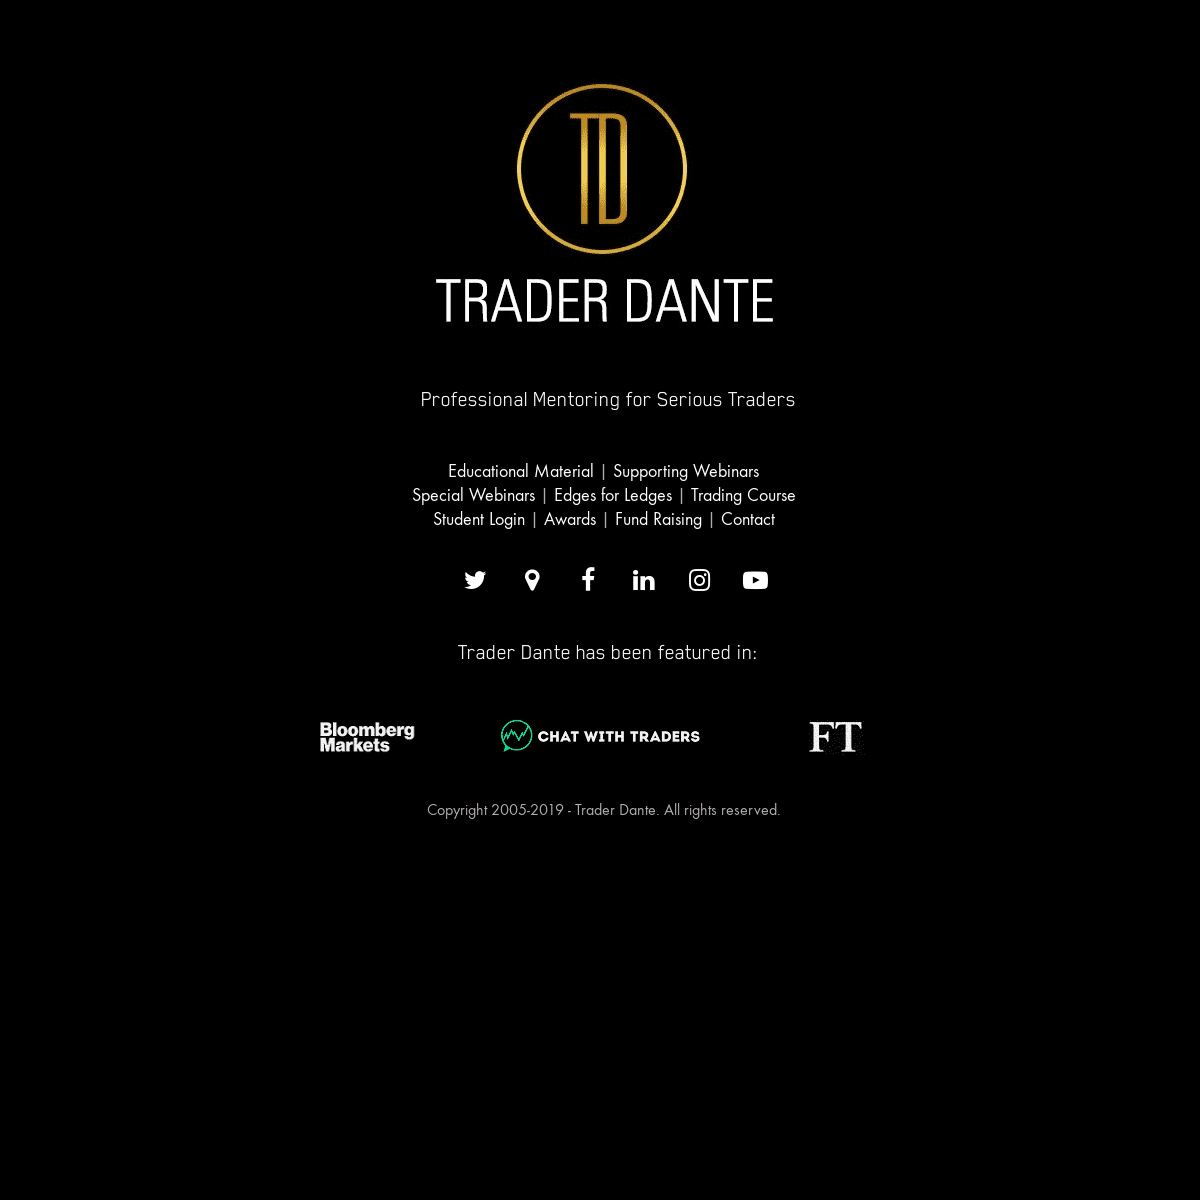 A complete backup of trader-dante.com